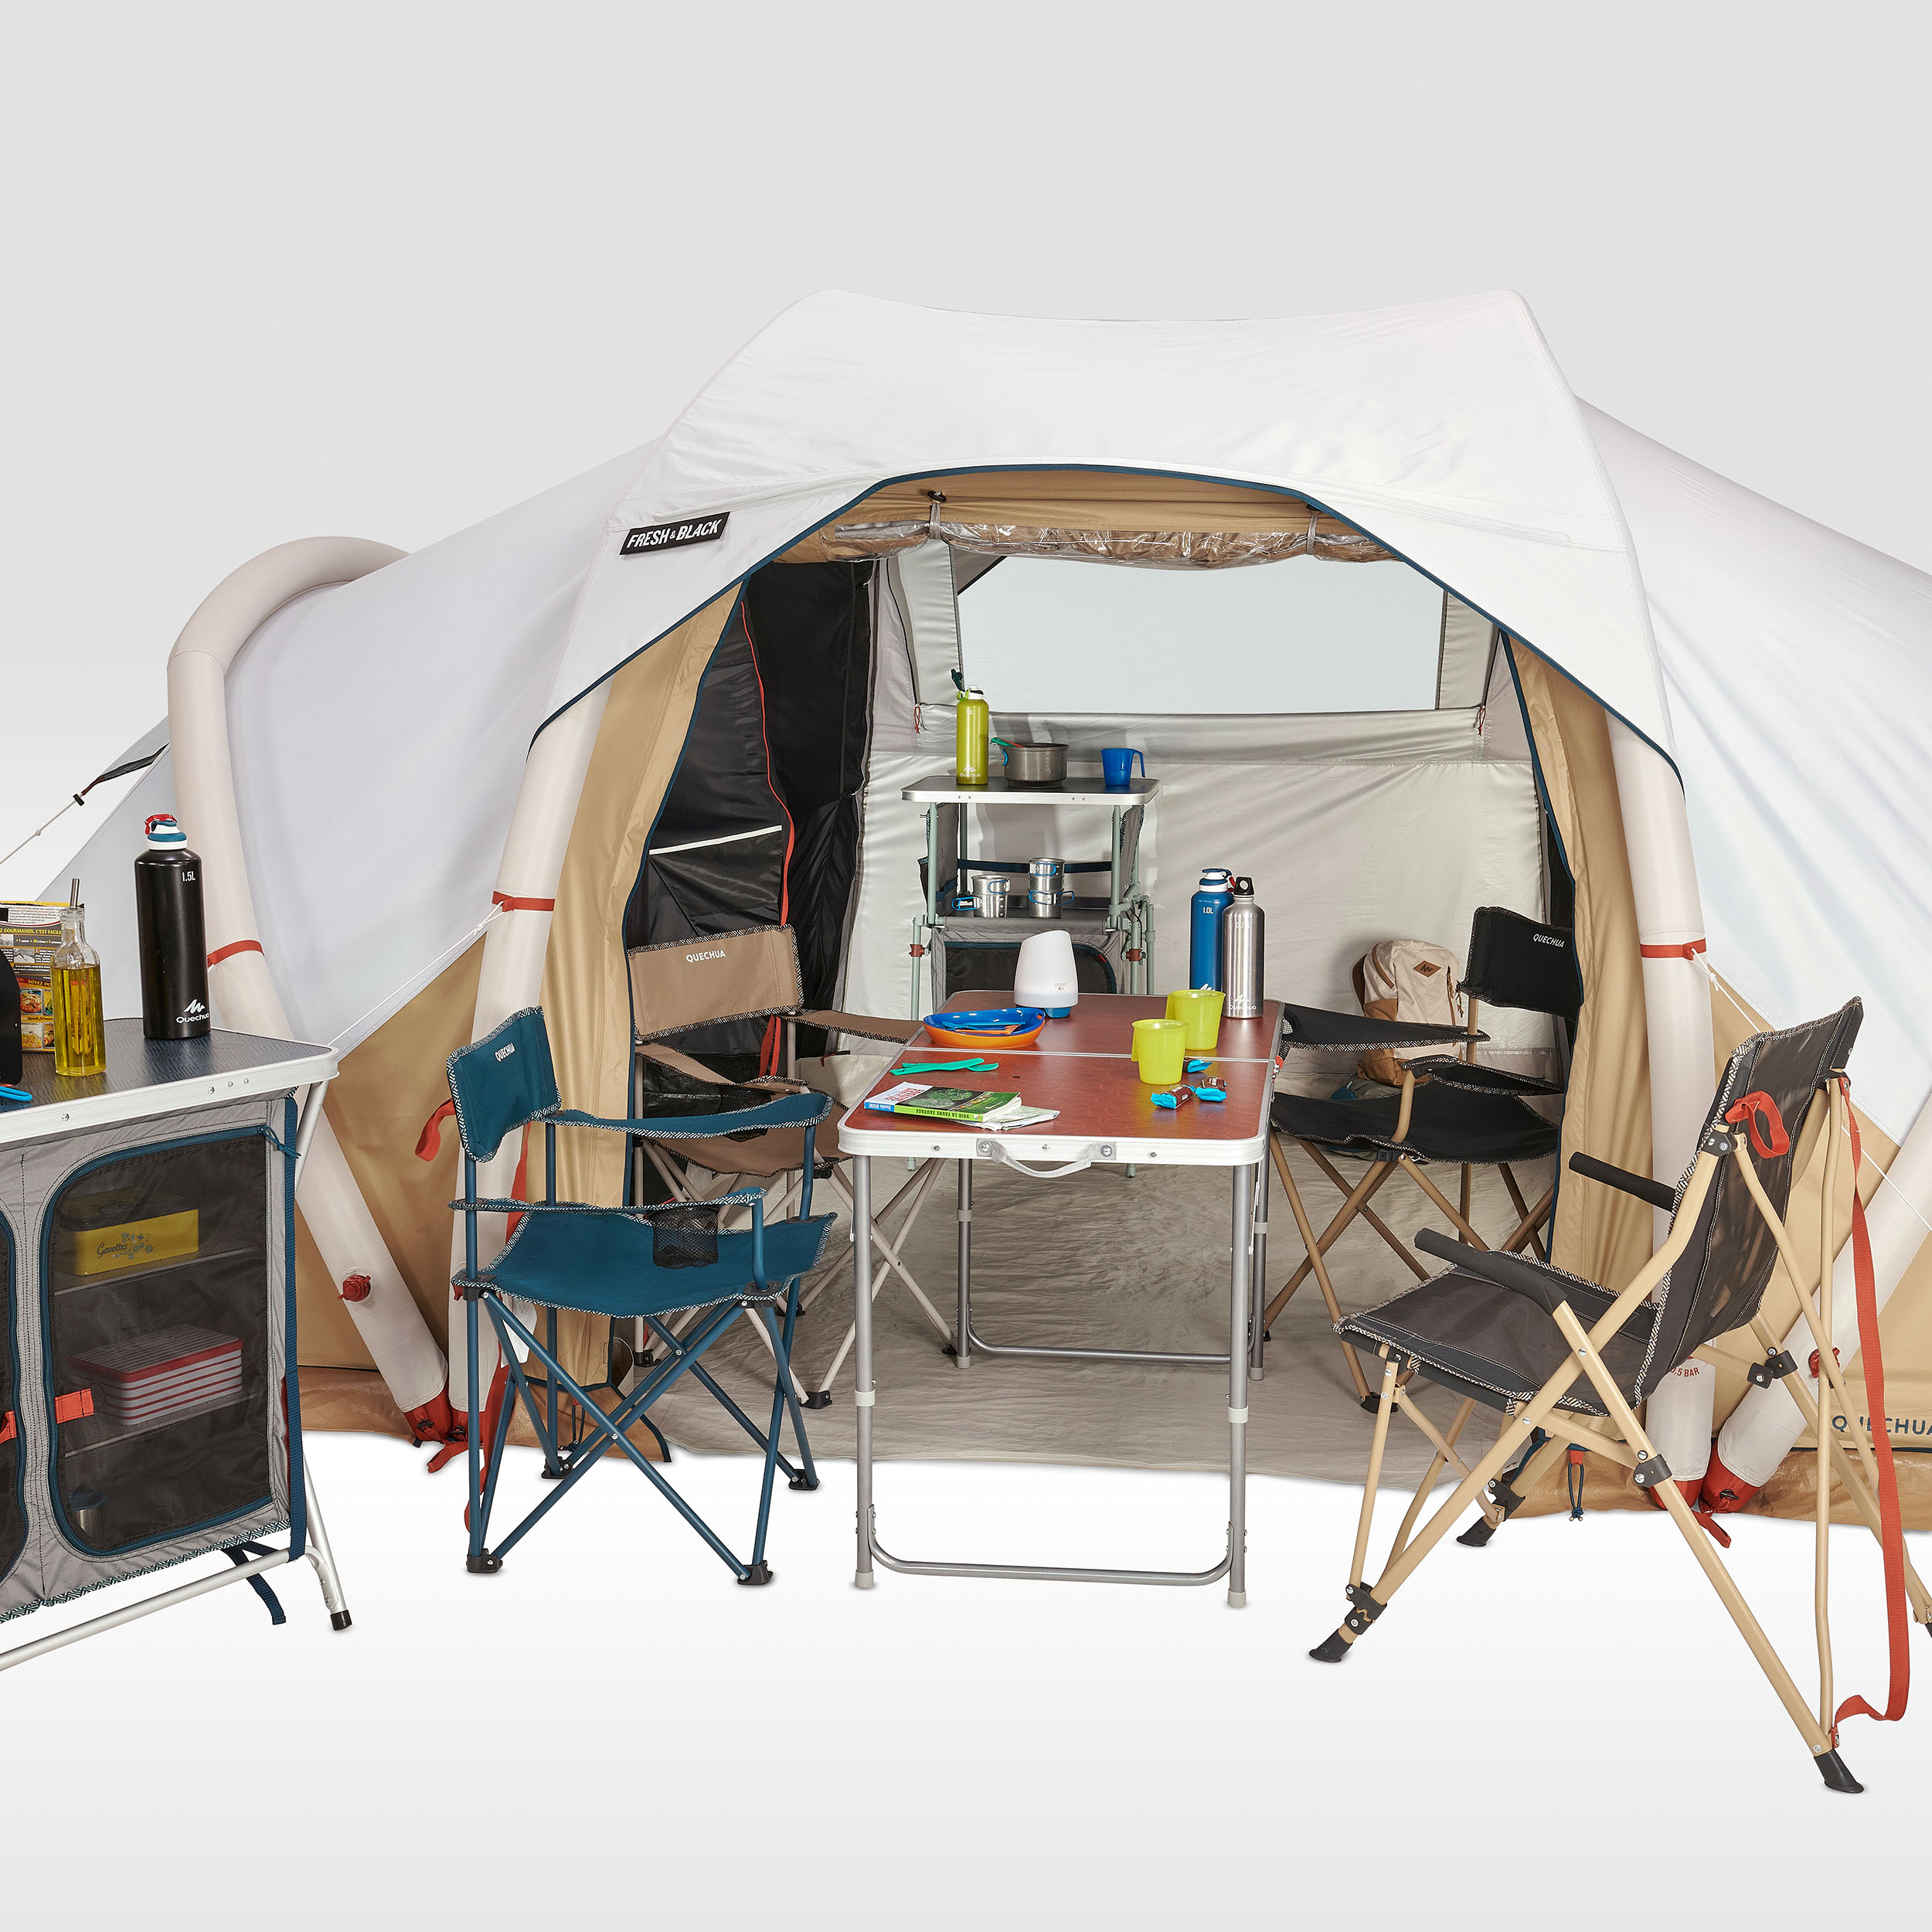 Accommodation - Tente "Prêt À Camper" - Le Solitaire du lac